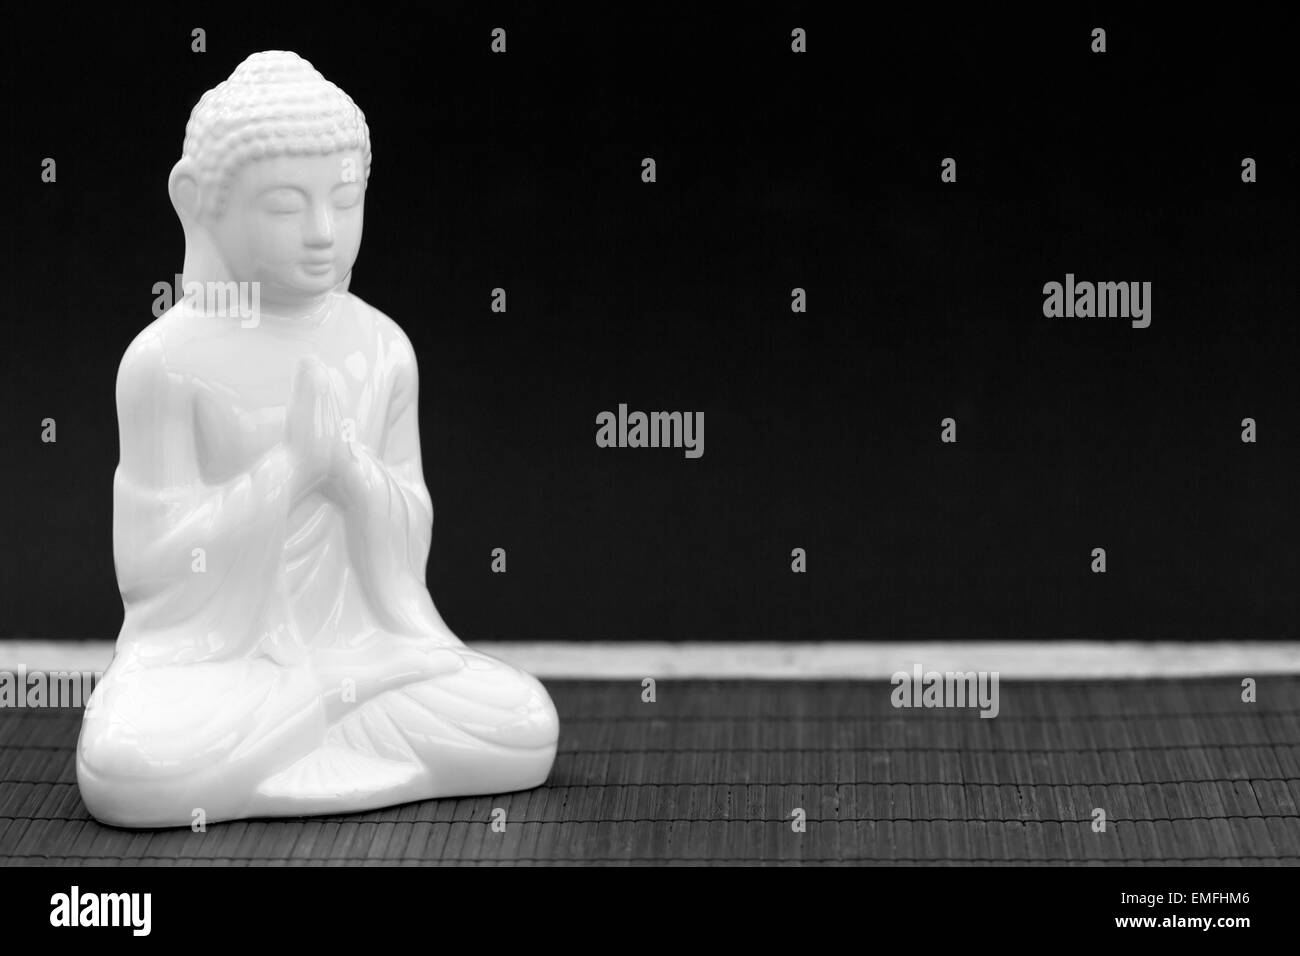 Rodada en blanco y negro horizontal de una figura blanca en pose de meditación Foto de stock